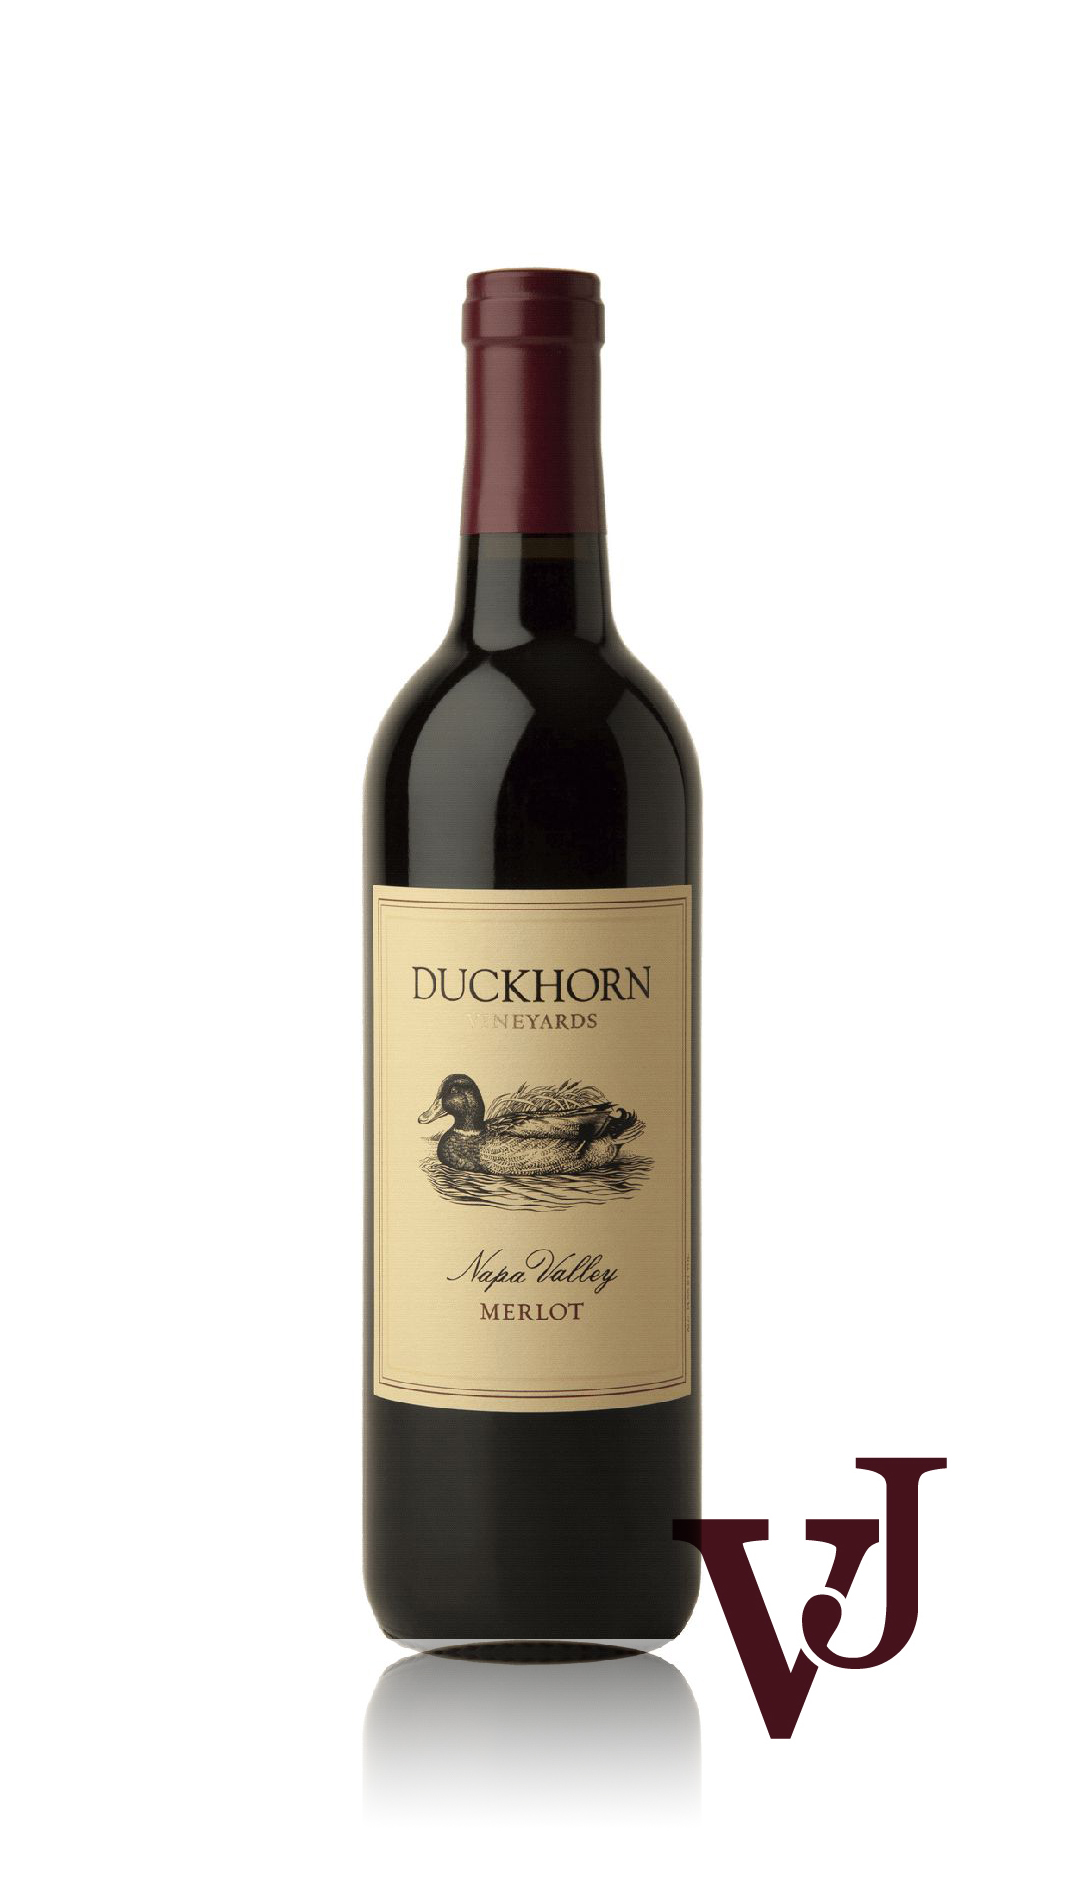 Rött Vin - Duckhorn Napa Valley Merlot artikel nummer 7449901 från producenten Duckhorn Vineyards från området USA